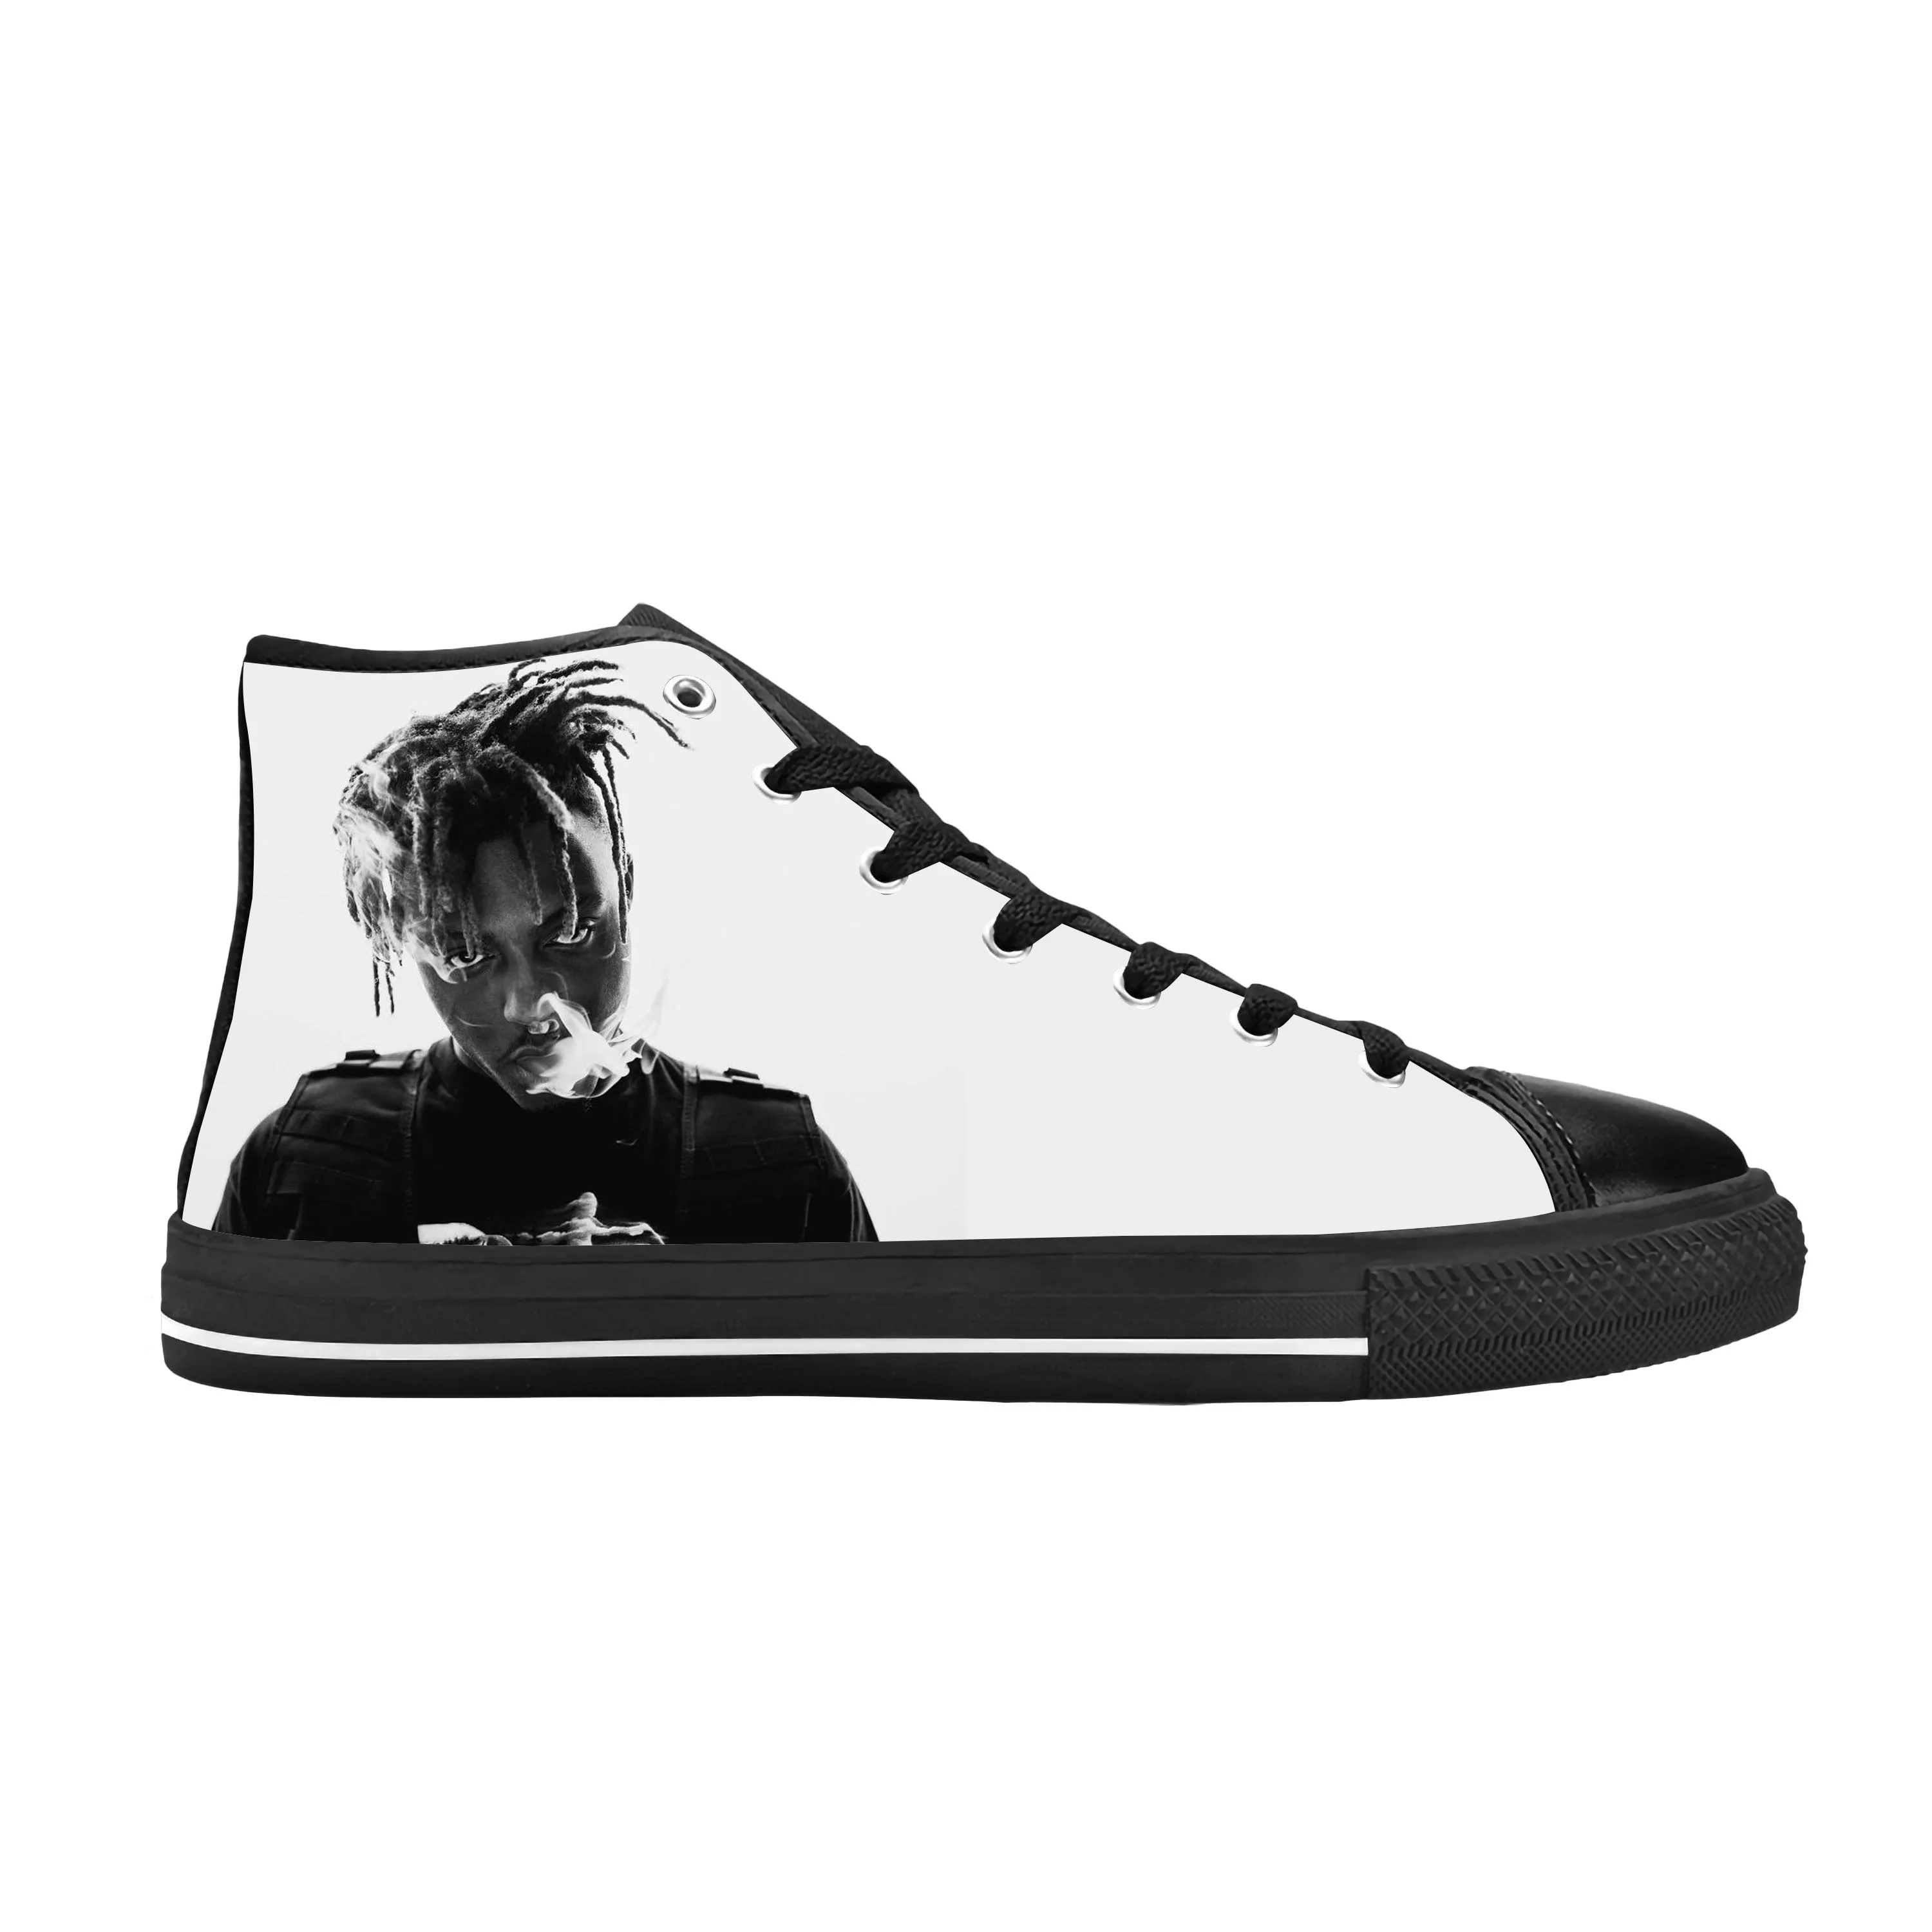 

Juice Wrld Hip Hop Rap Rapper Music Singer Rock Casual Cloth Shoes High Top Comfortable Breathable 3D Print Men Women Sneakers